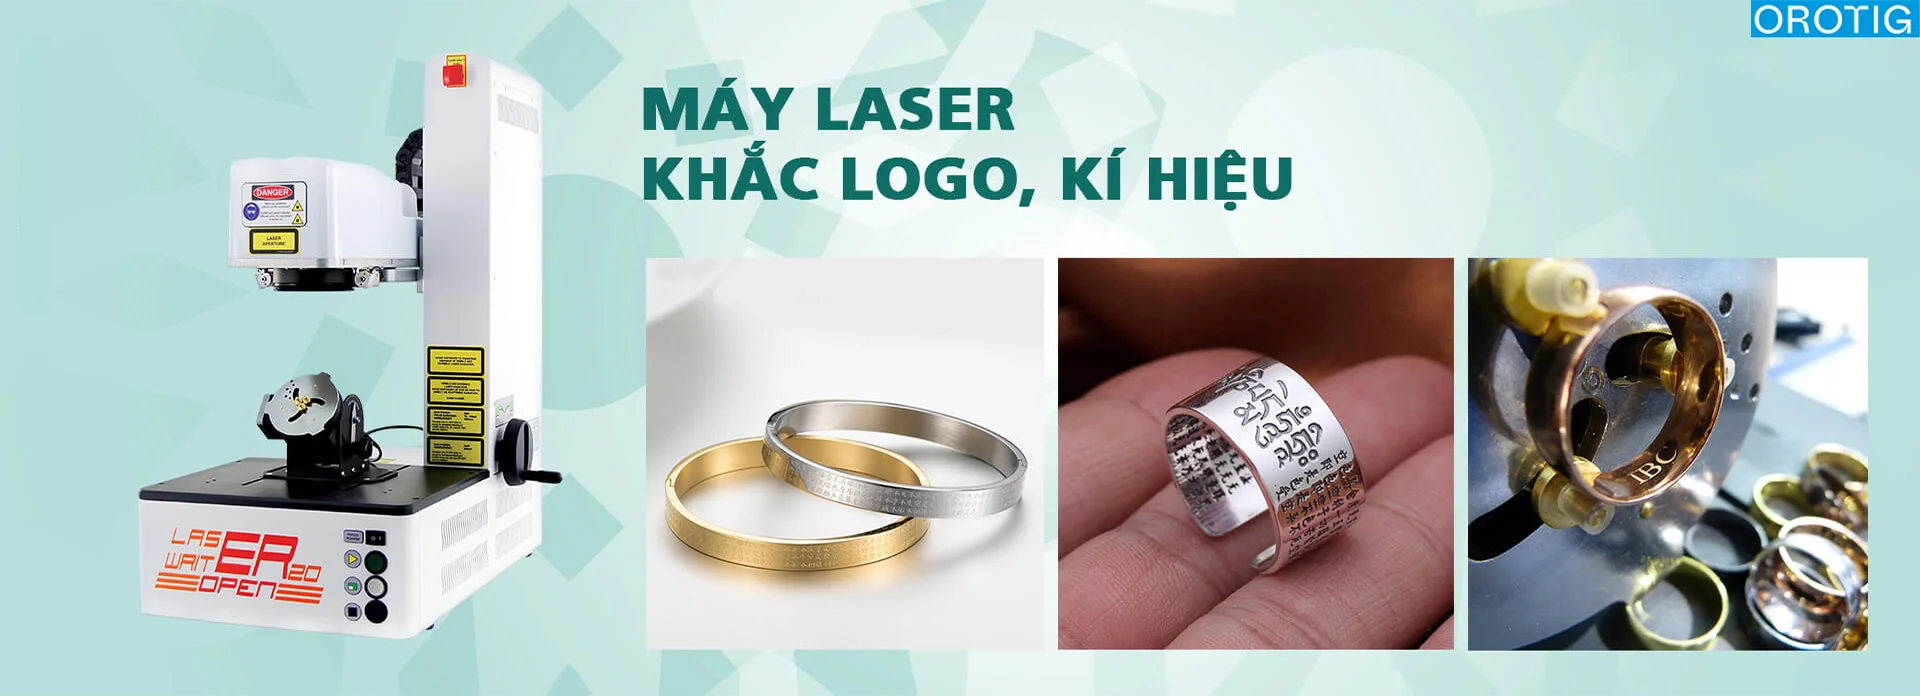 Công Ty Cổ Phần Thương Mại Dịch Vụ IBC phân phối các dòng máy khắc laser phục vụ cho ngành kim hoàn tại thị trường Việt Nam